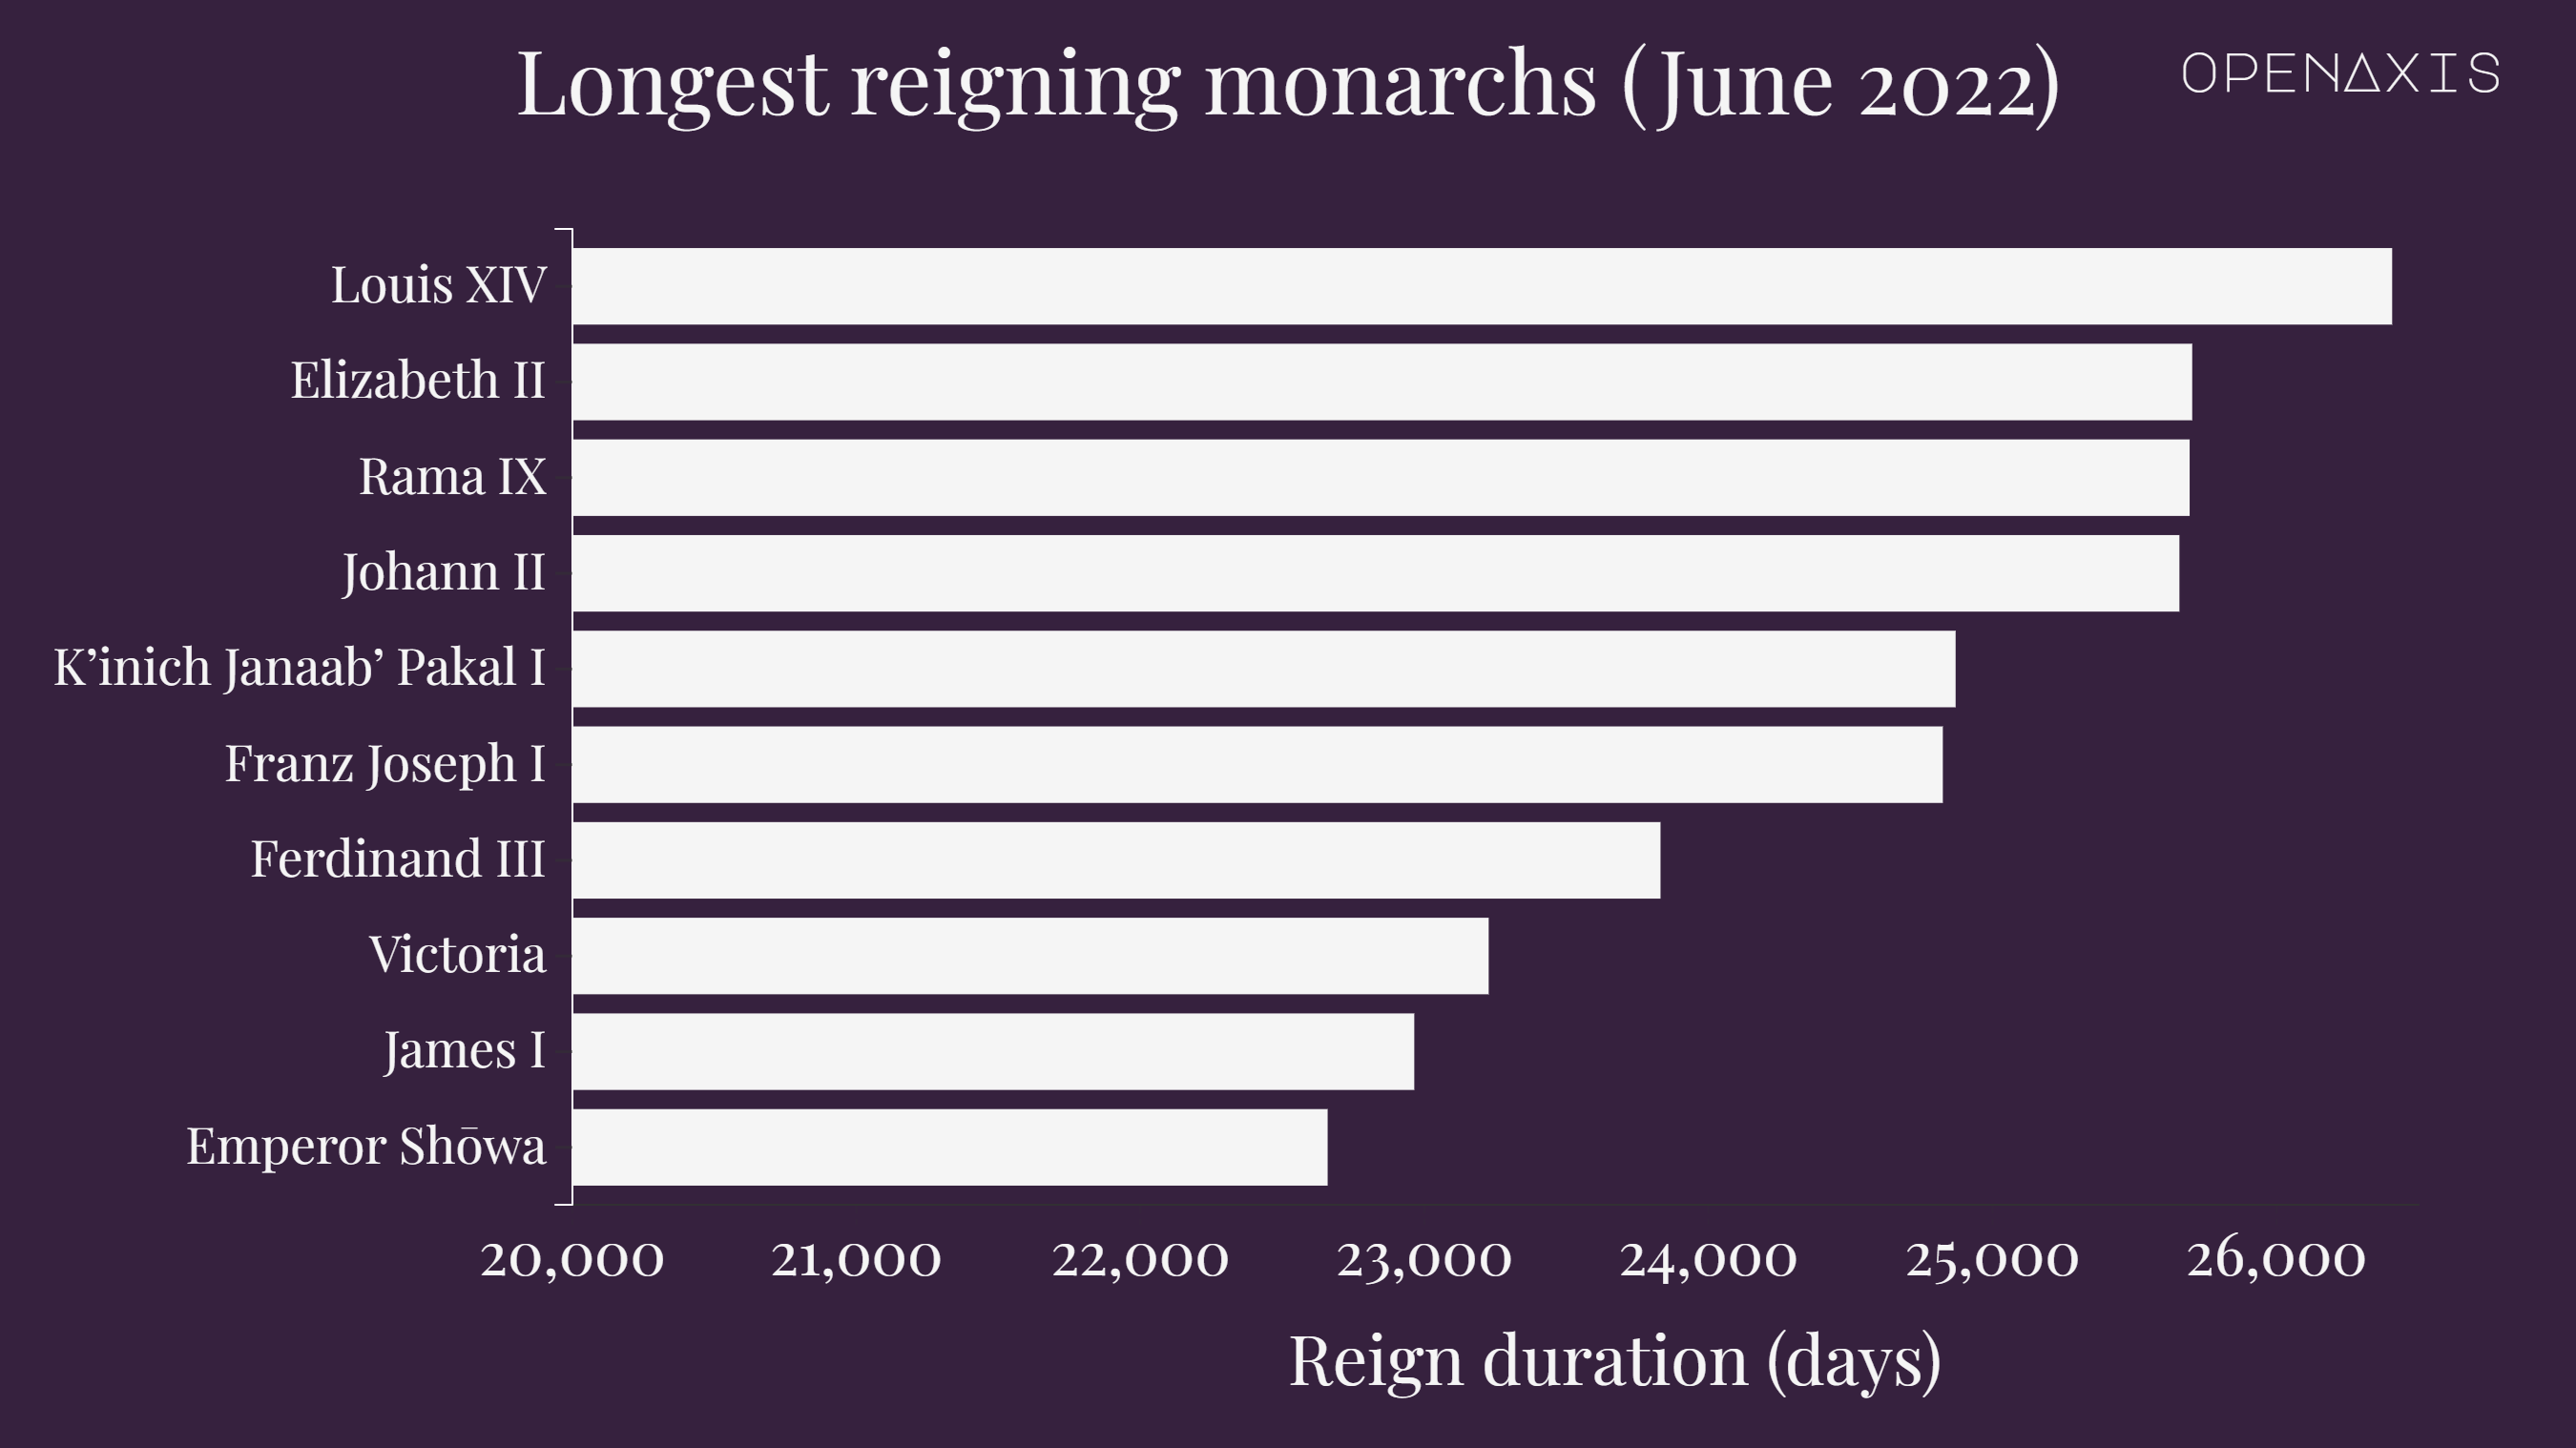 "Longest reigning monarchs (June 2022)"